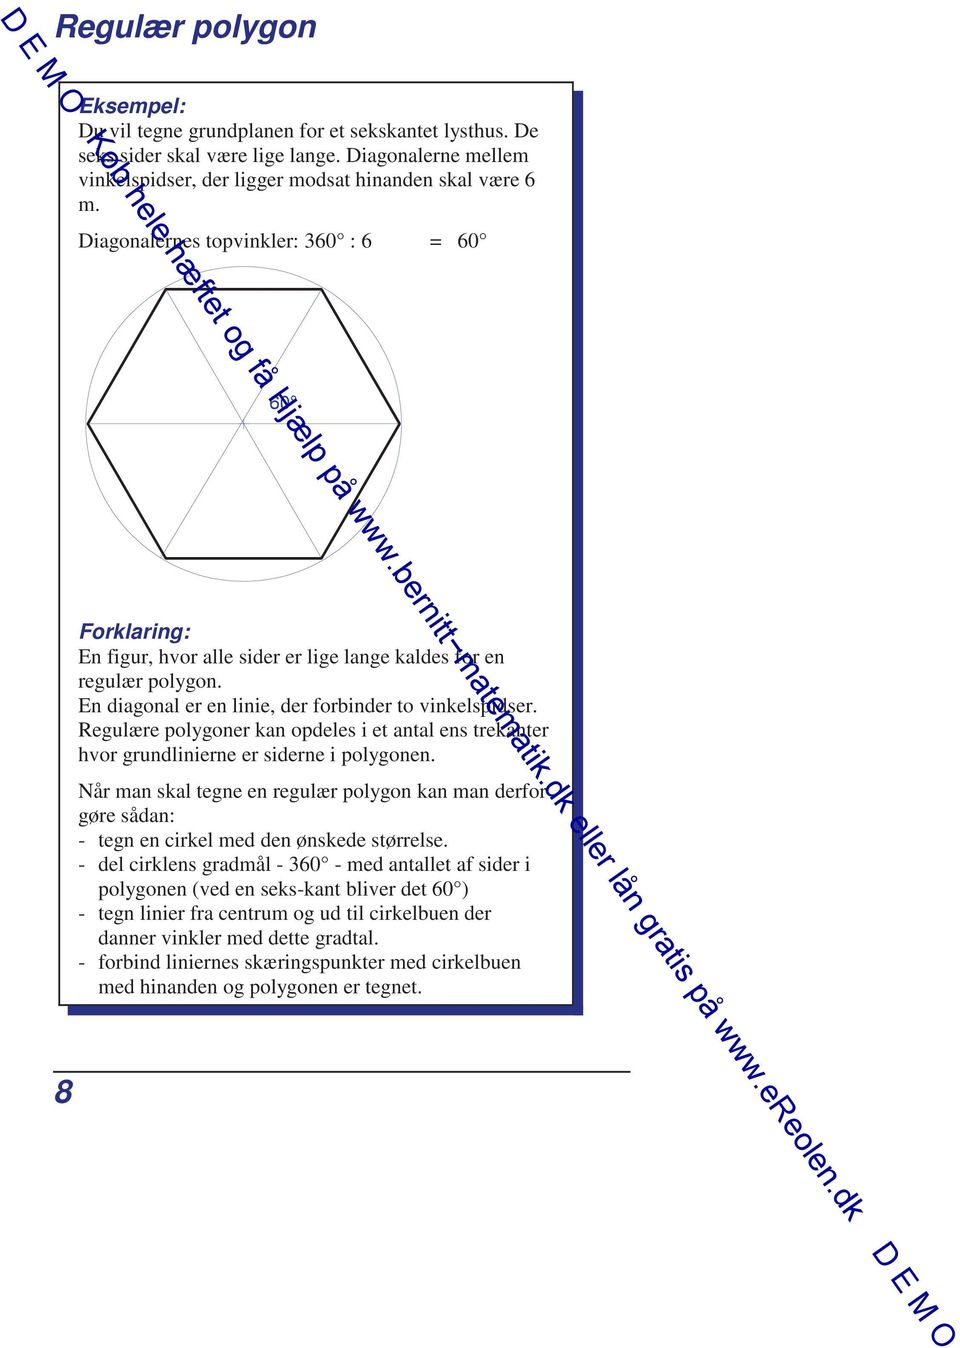 Regulære polygoner kan opdeles i et antal ens trekanter hvor grundlinierne er siderne i polygonen.